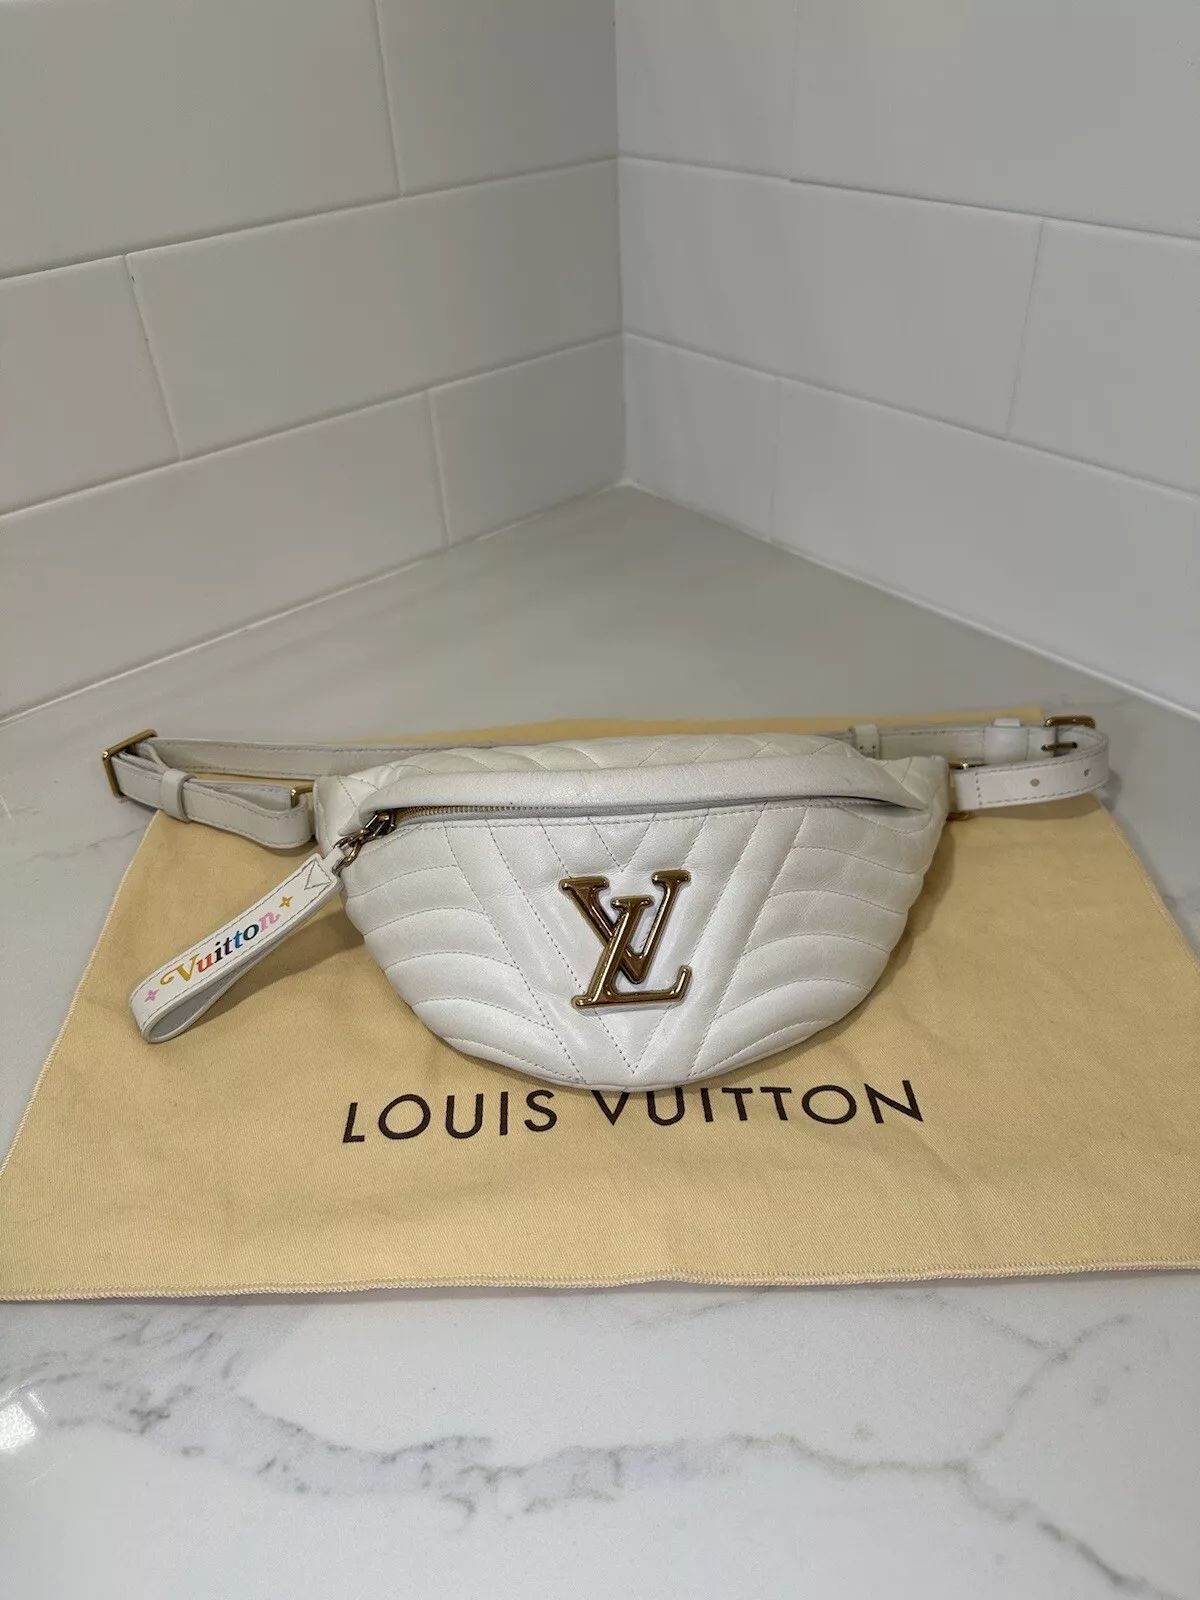 LOUIS VUITTON New Wave Bumbag Belt Bag White (entrupy authentication) | eBay US